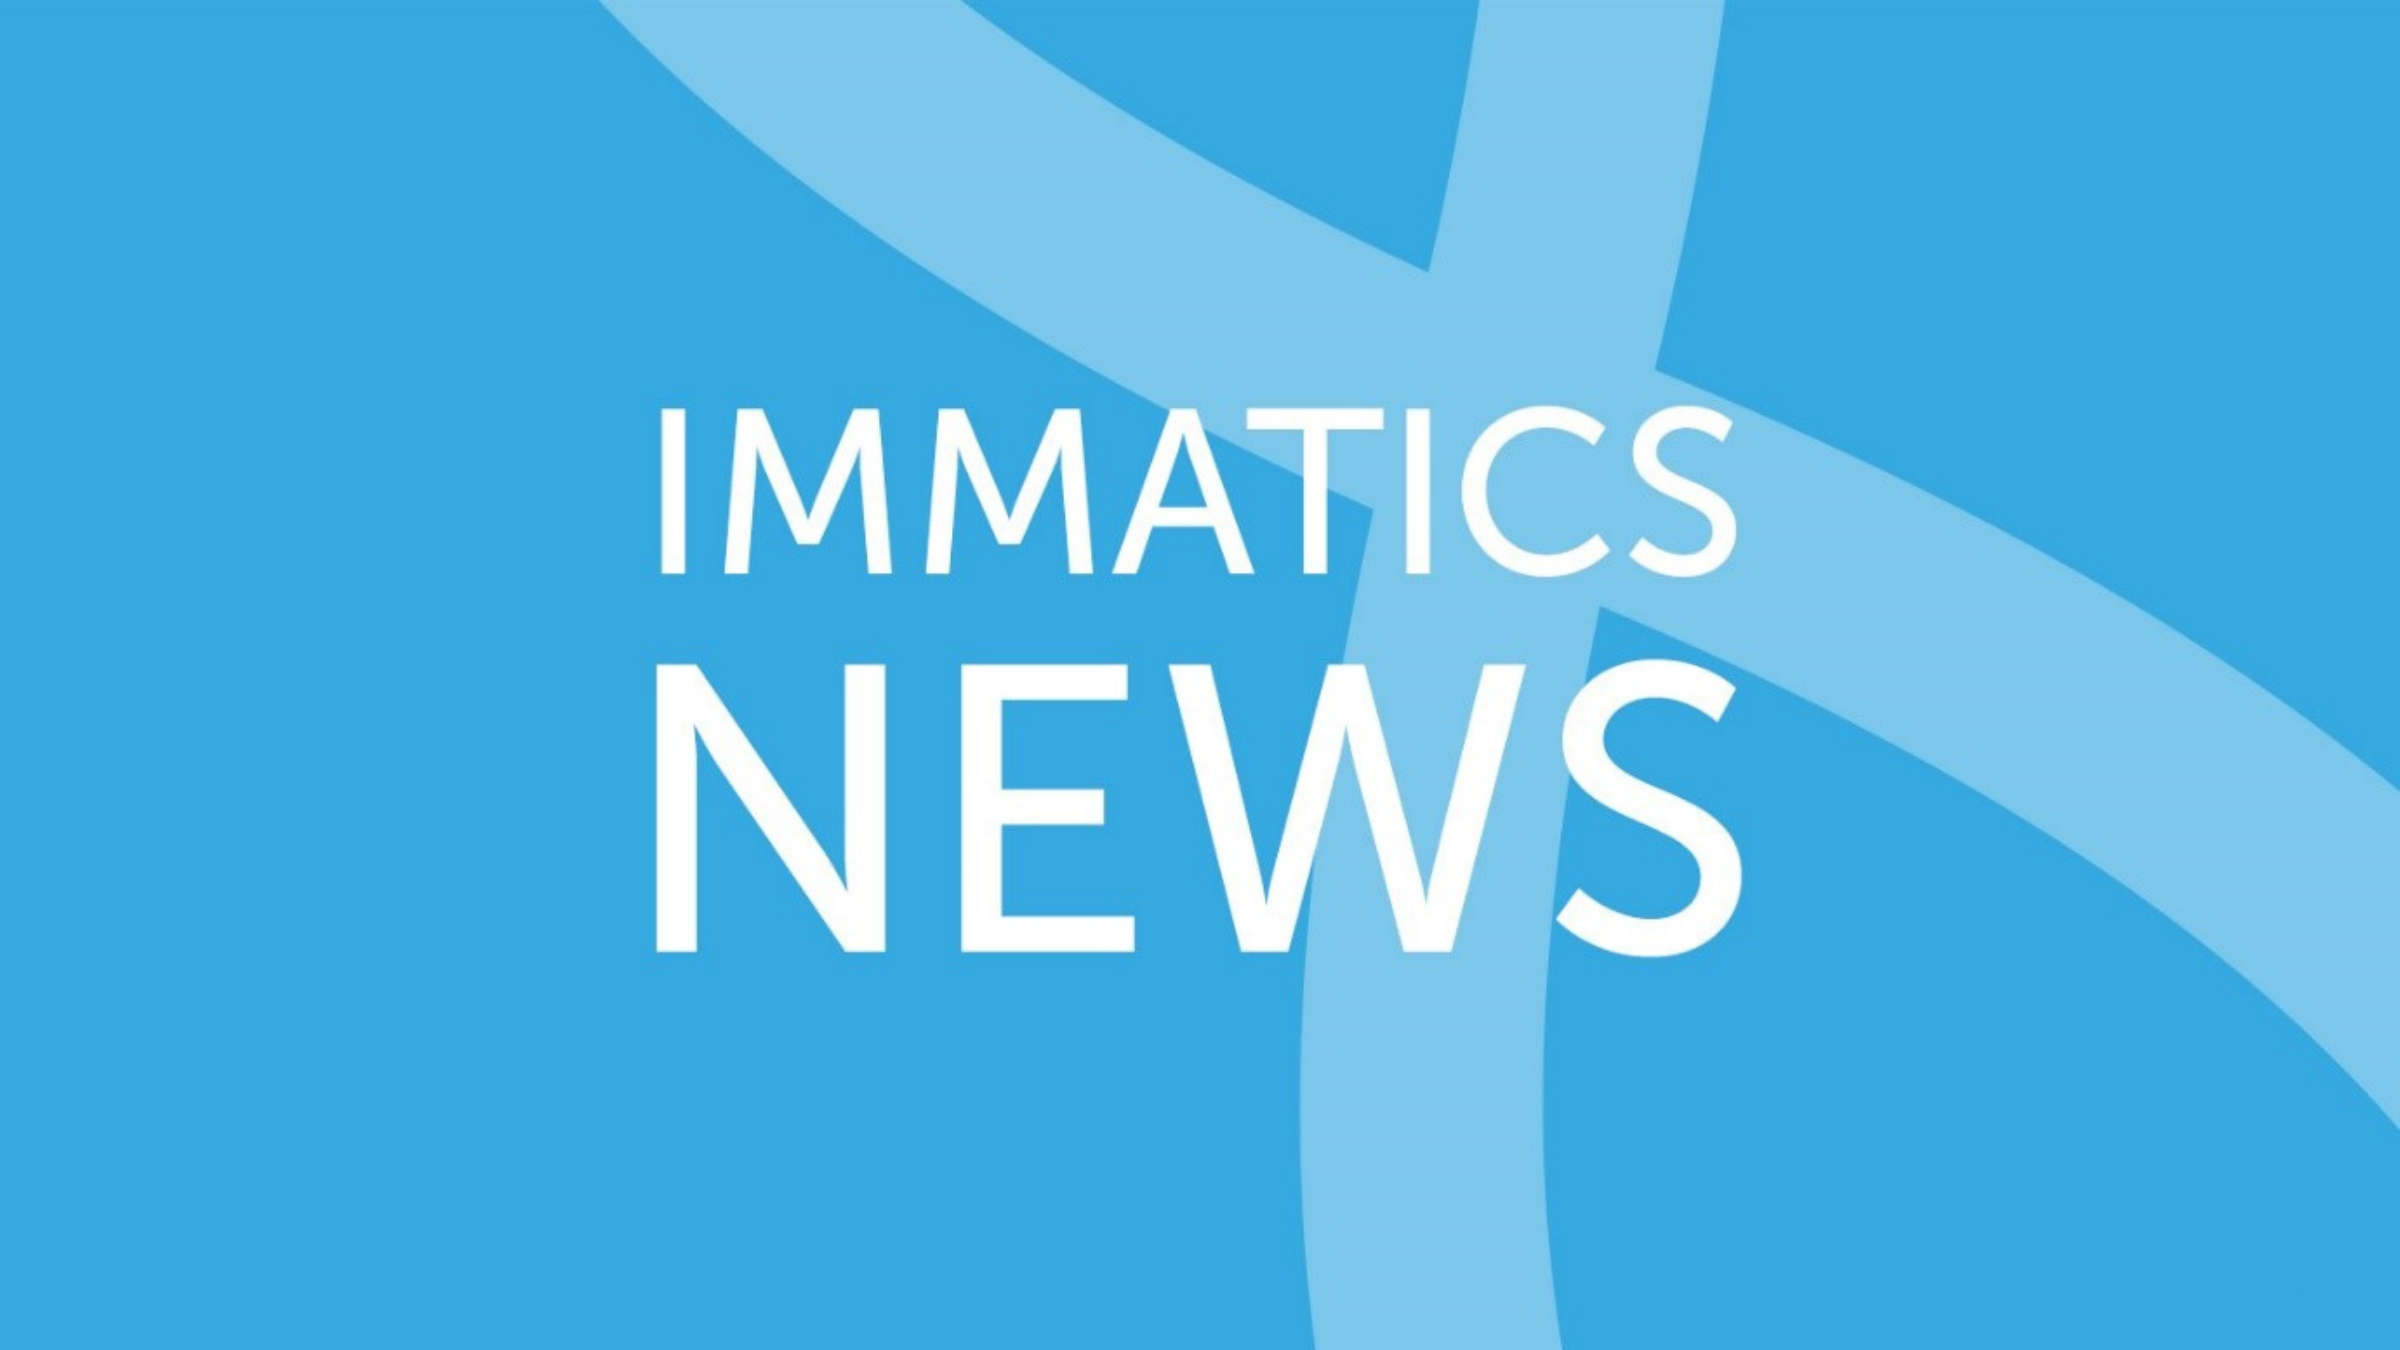 Immatics news